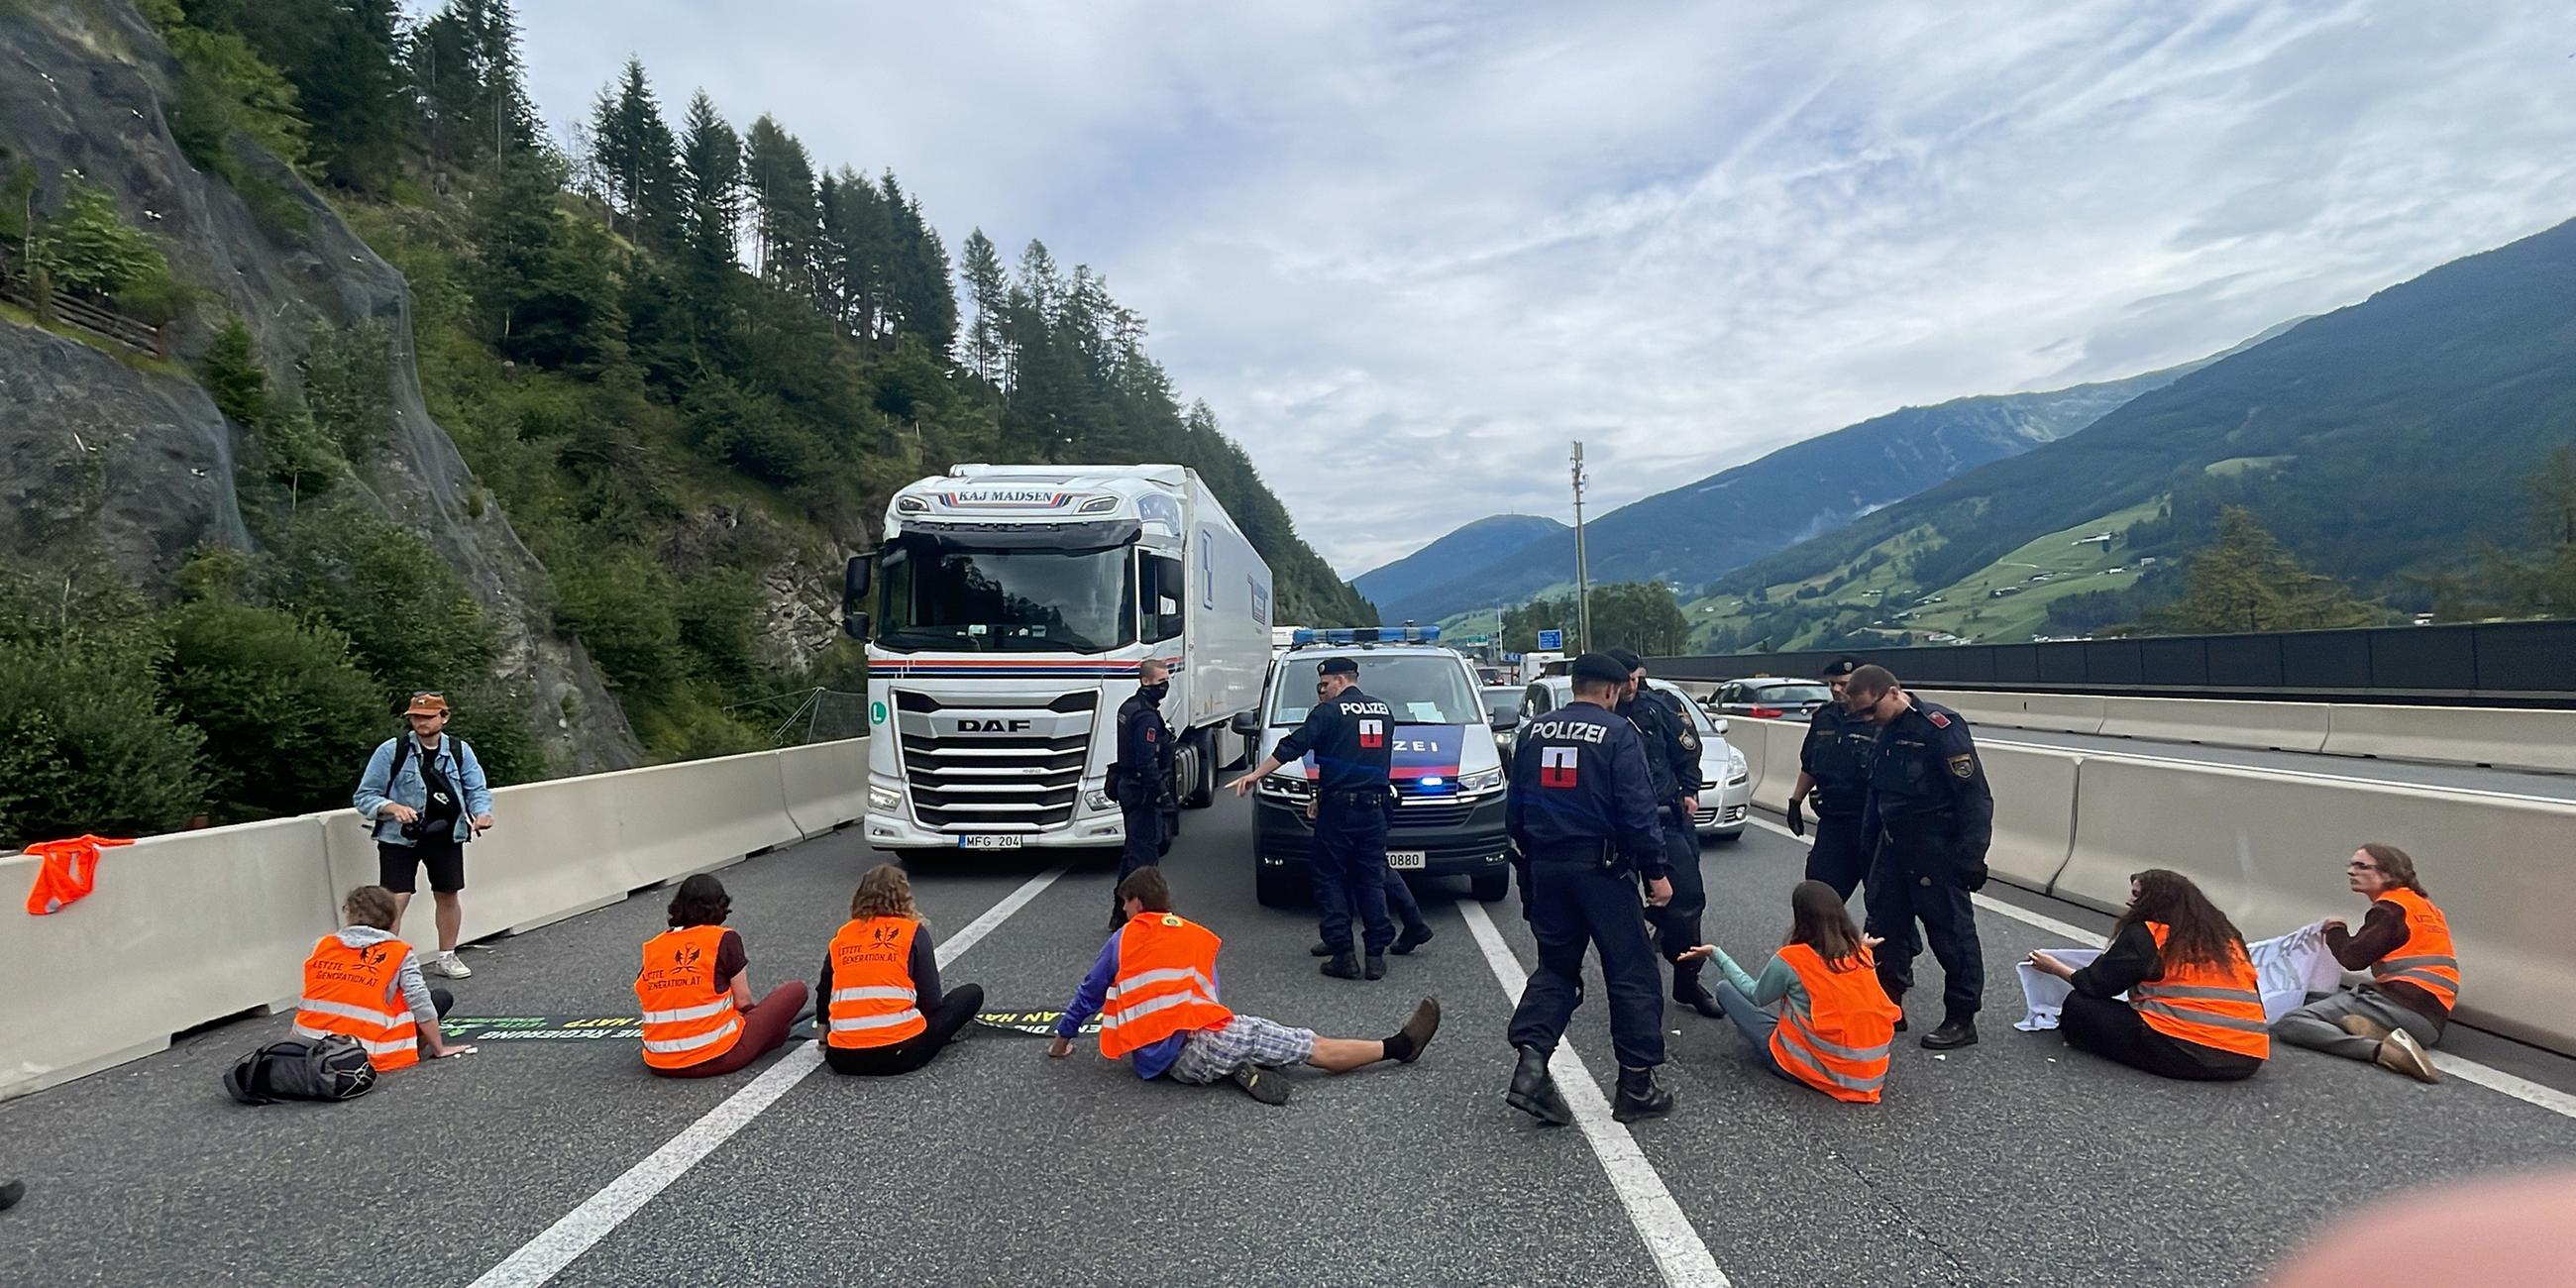 Österreich, Matrei am Brenner: Klimaaktivisten der Gruppierung "Letzte Generation" blockieren die Brennerautobahn (A13) in Tirol nahe Matrei am Brenner.